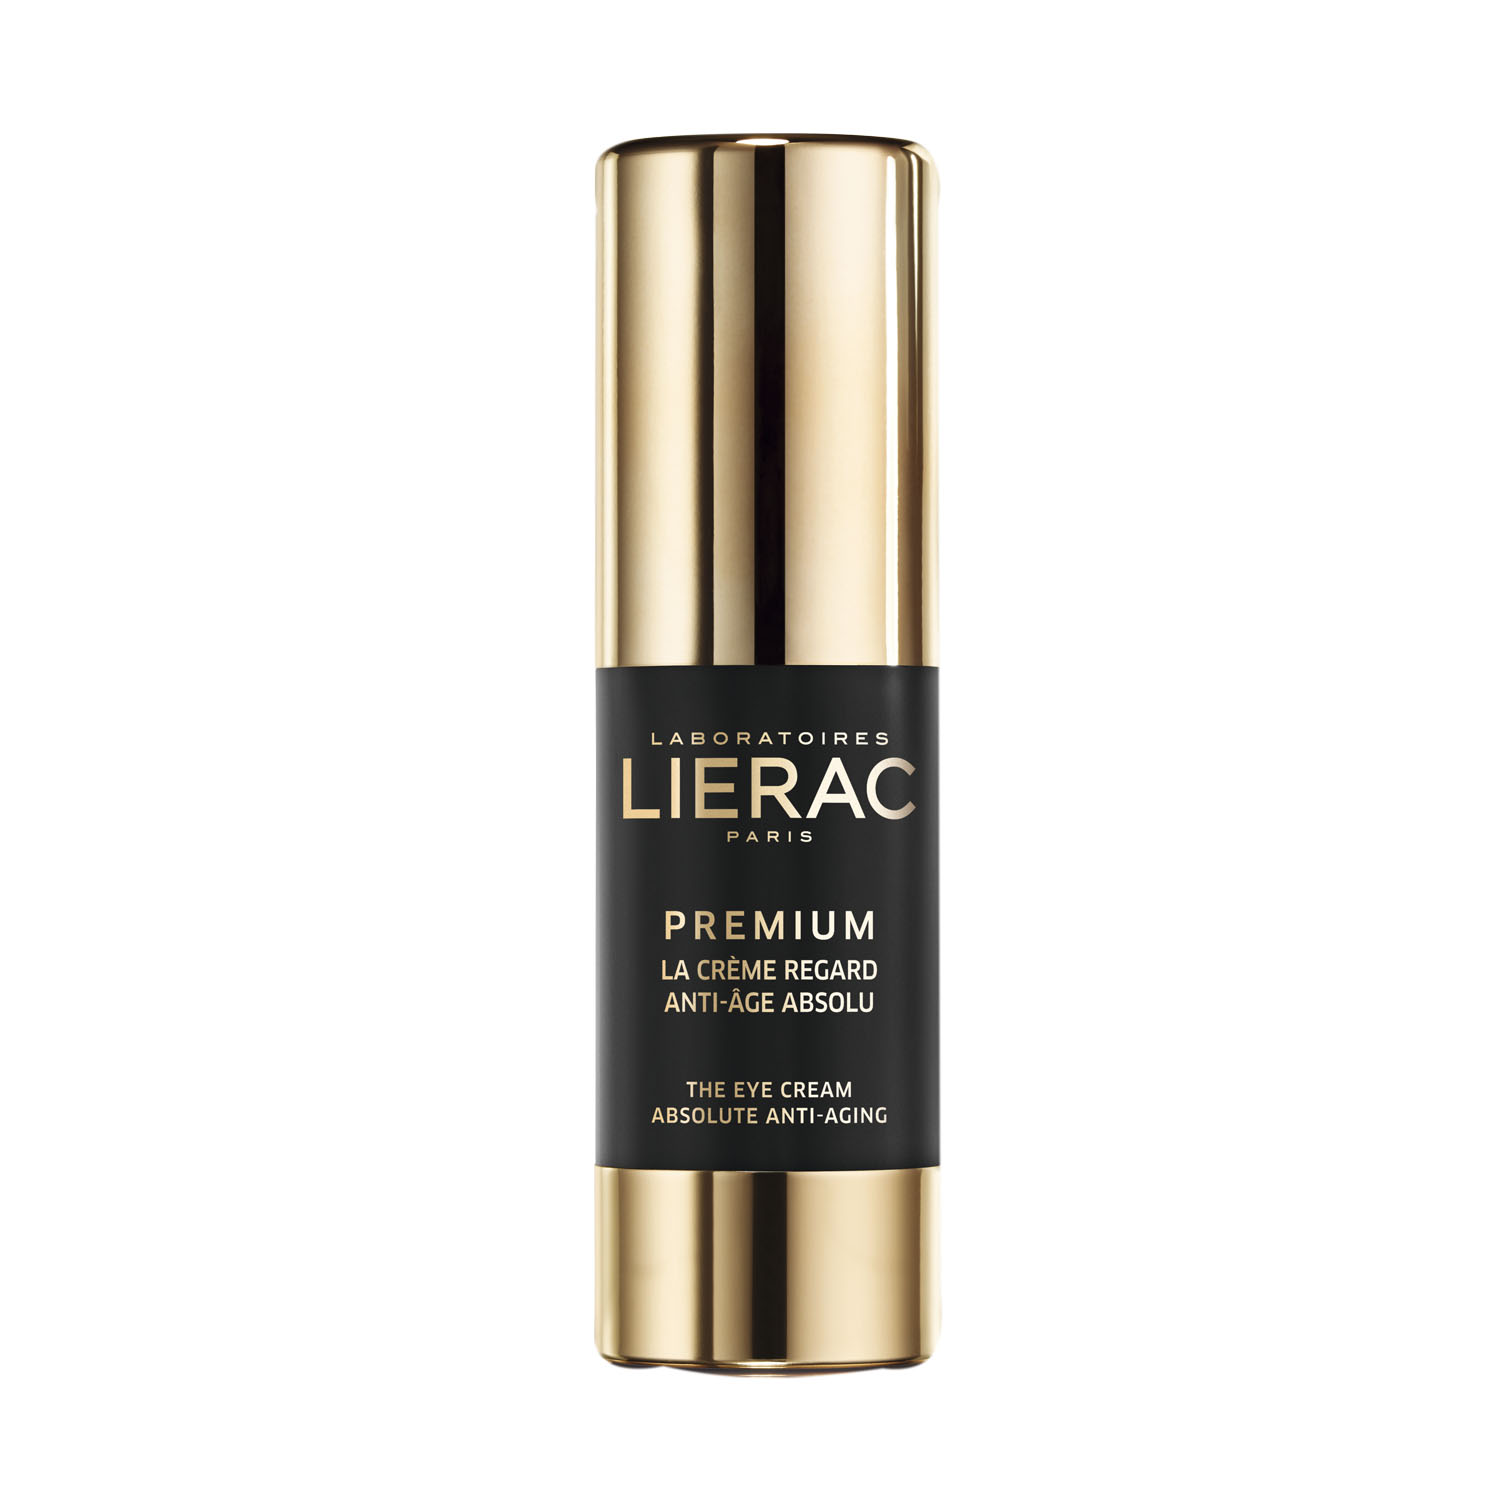 Lierac Premium крем для контура вокруг глаз анти-аж Абсолю 15мл